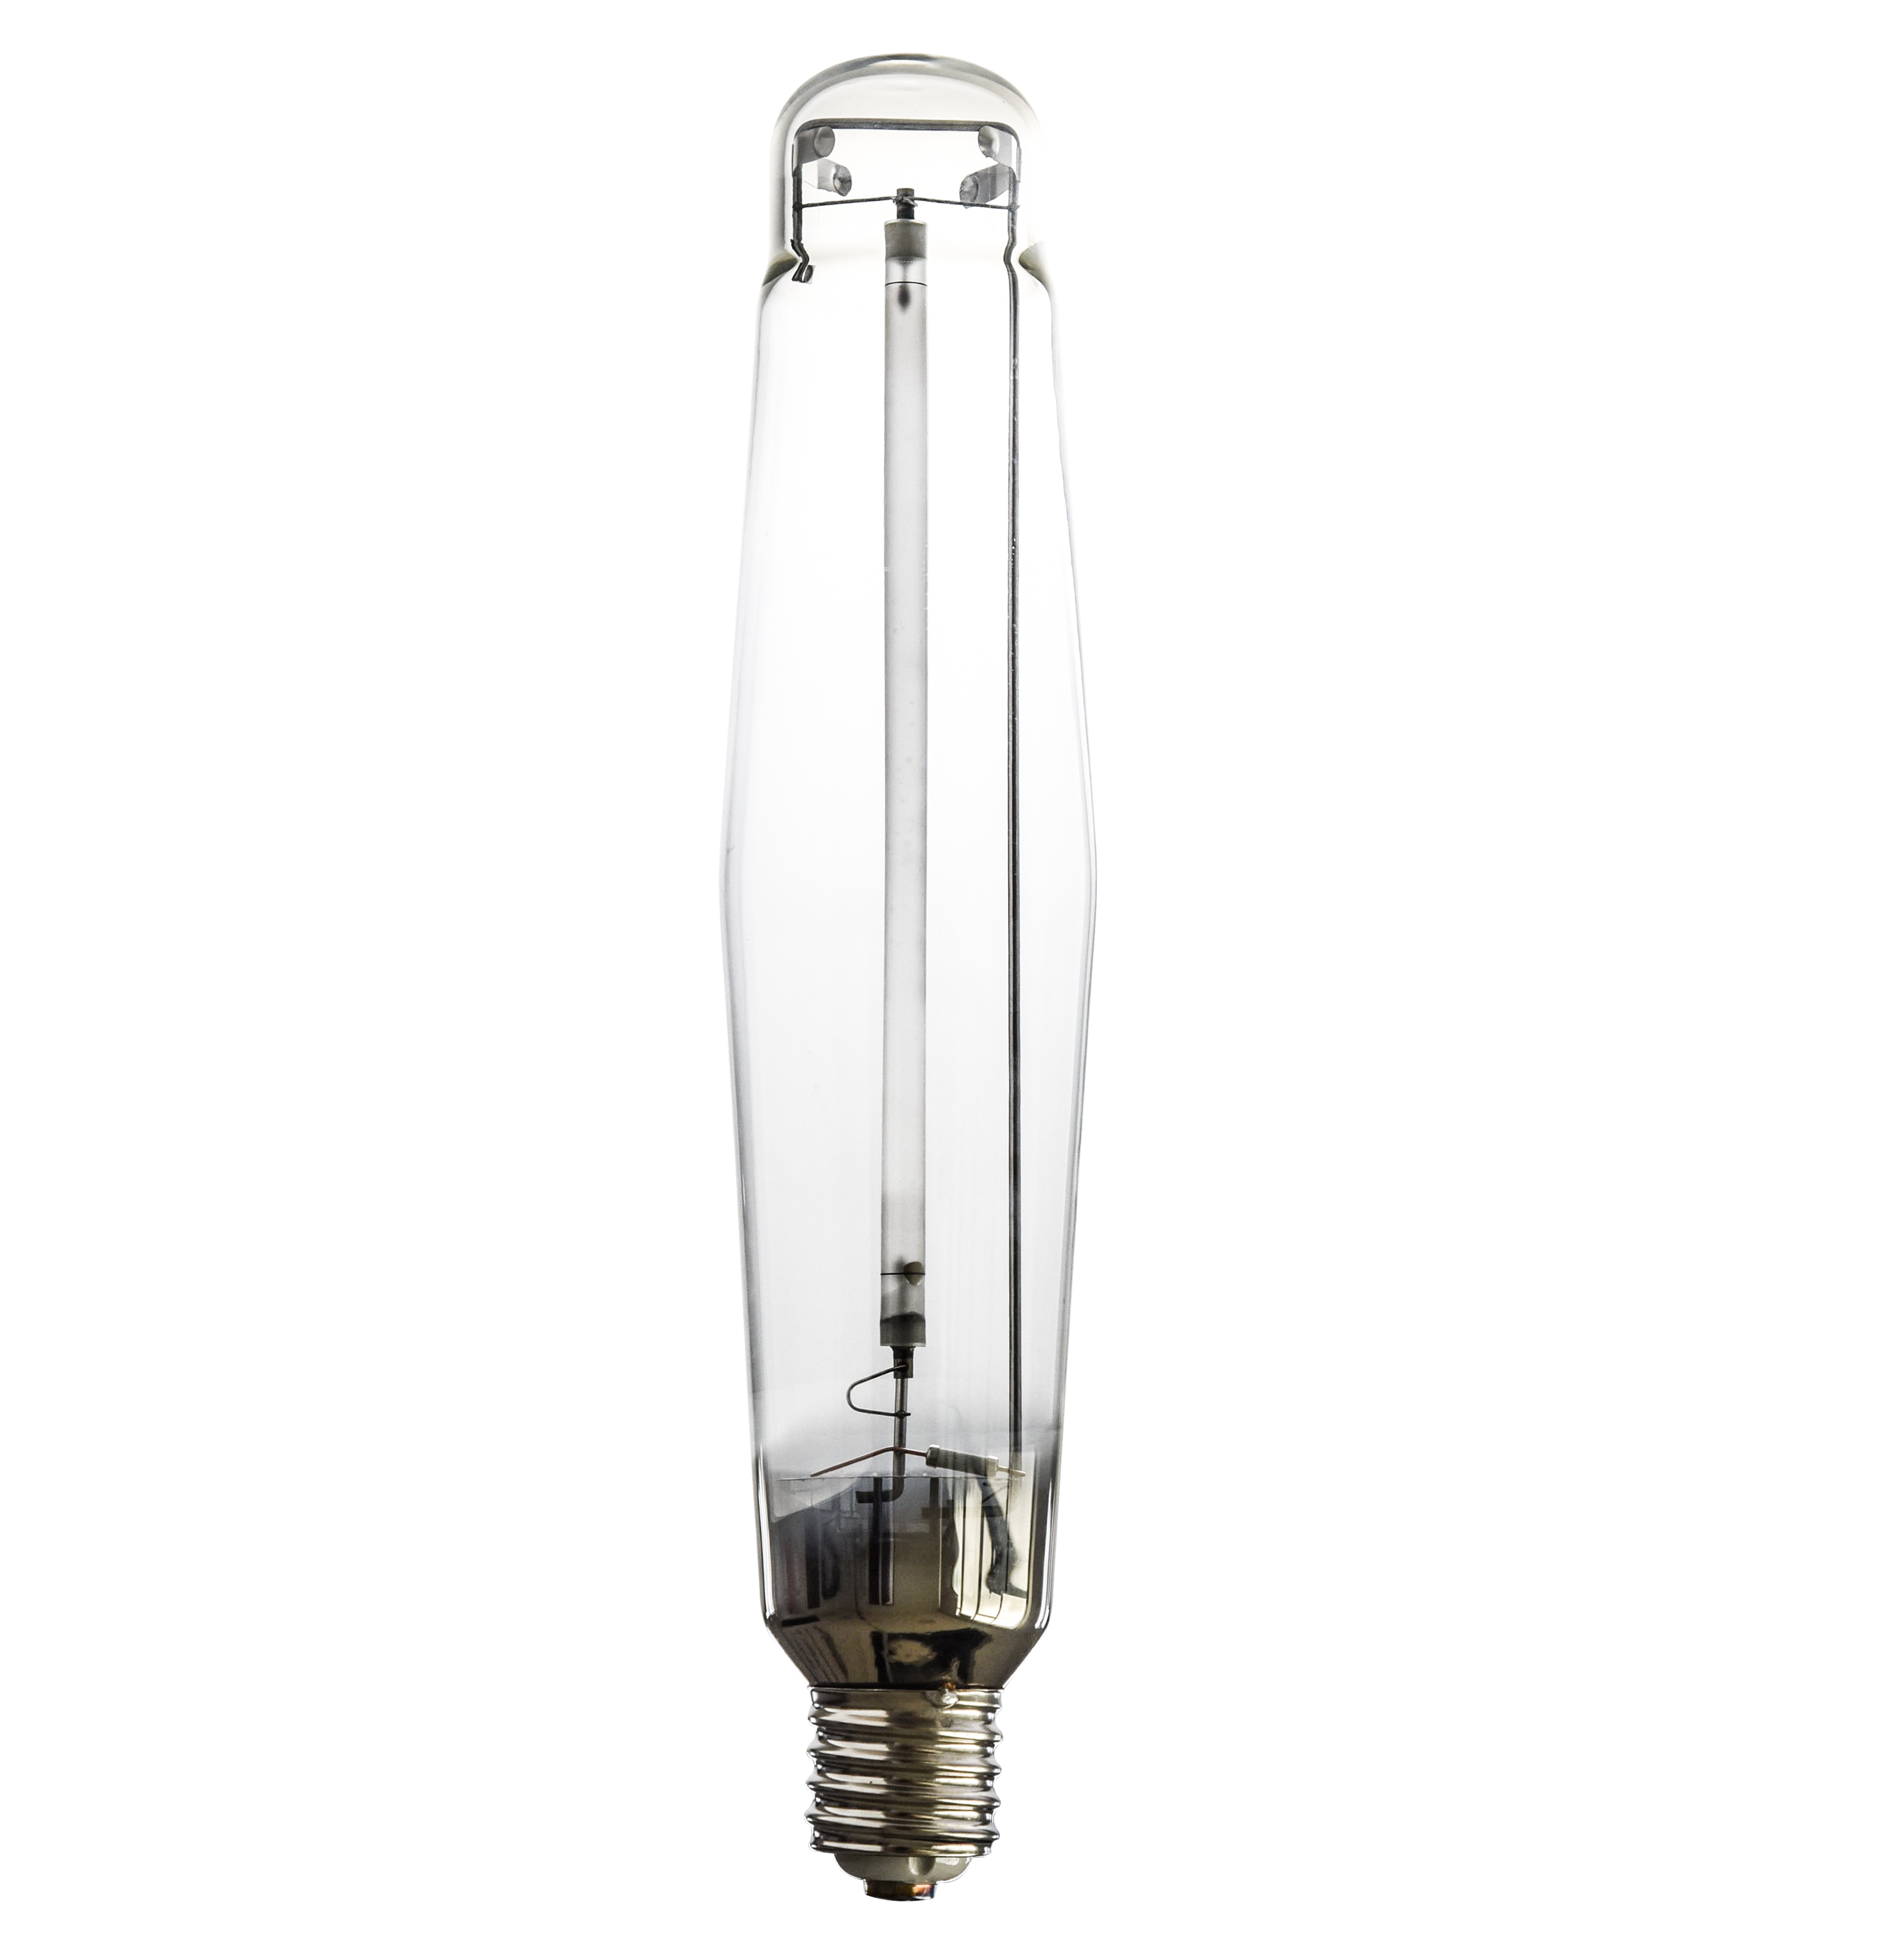 HPS1000w 고압 나트륨 램프는 빛을 성장